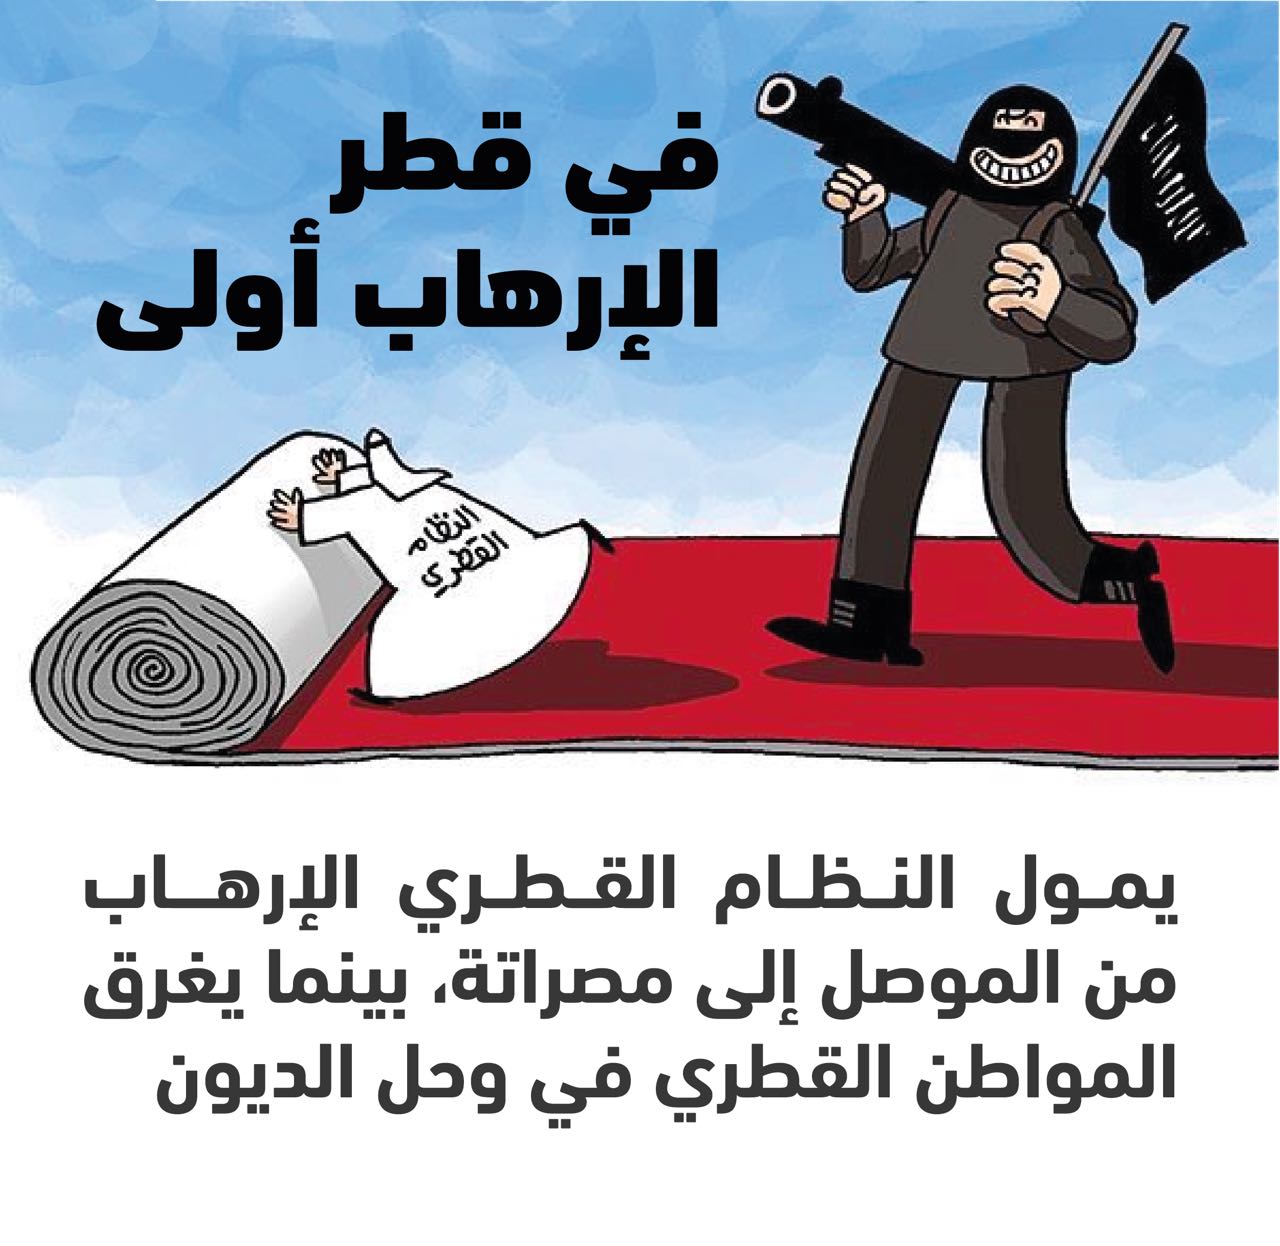 بالأرقام.. القطريون مهددون بالسجن بسبب الديون.. وتميم يبدد أموالهم فى دعم الإرهاب 160607-2